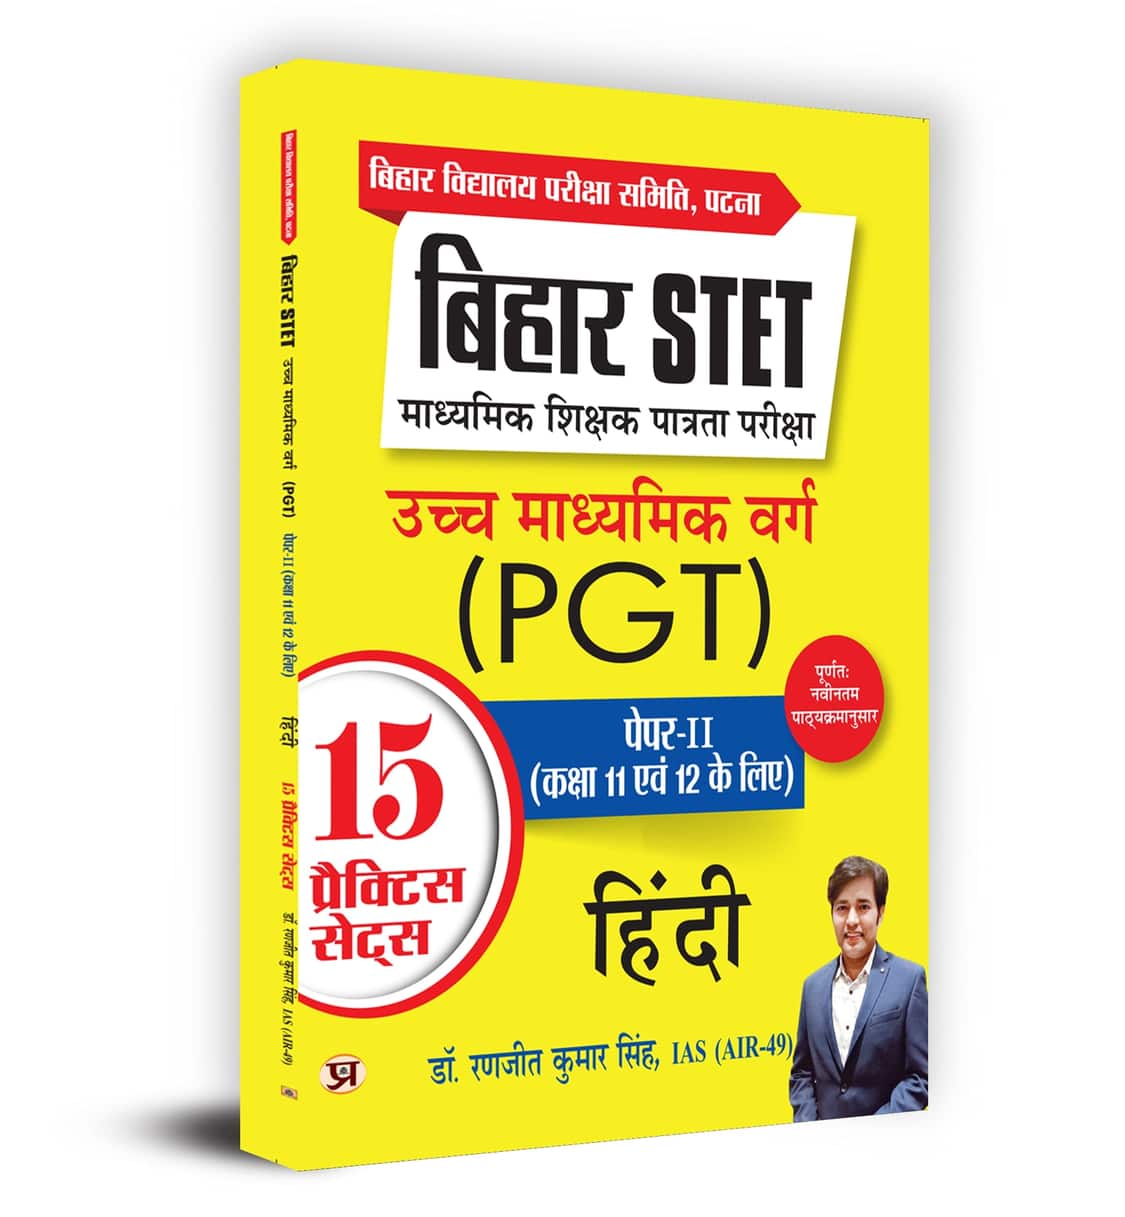 Bihar STET Madhyamik Shikshak Patrata Pariksha Uchch Madhyamik Varg (PGT) Paper-2 (Class 11 & 12) Hindi 15 Practice Sets